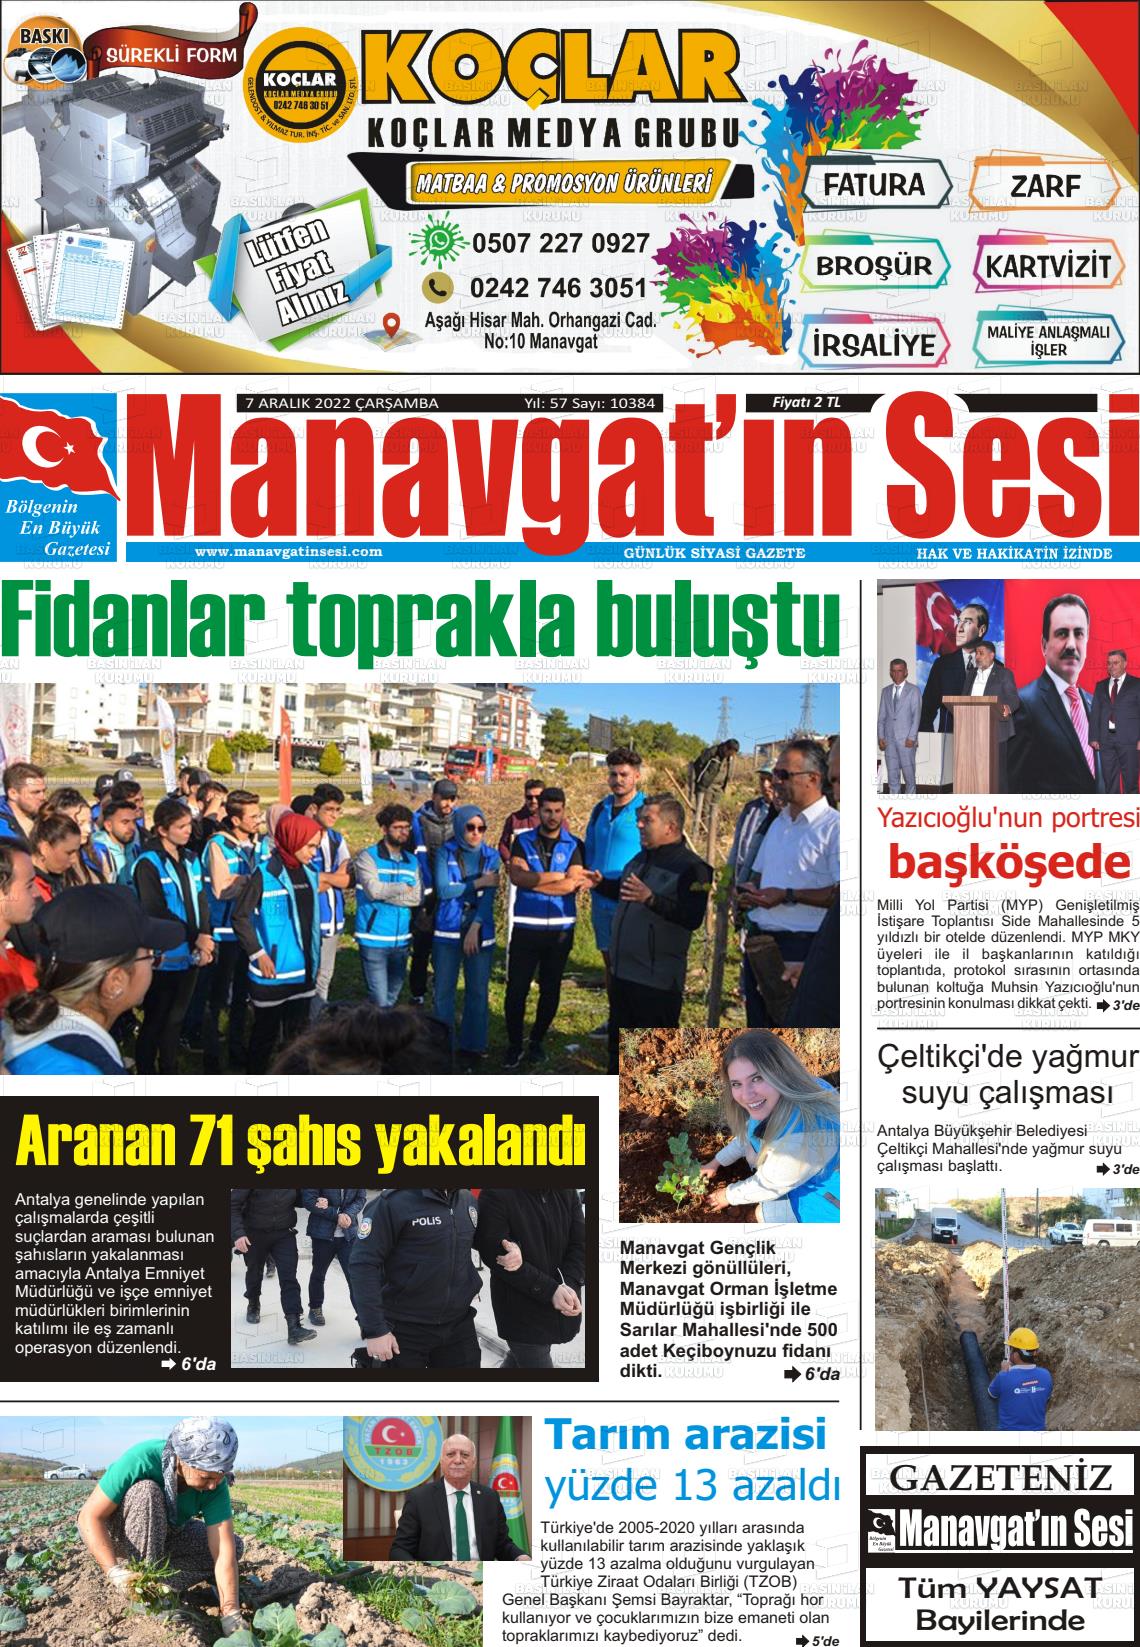 07 Aralık 2022 Manavgat'ın Sesi Gazete Manşeti